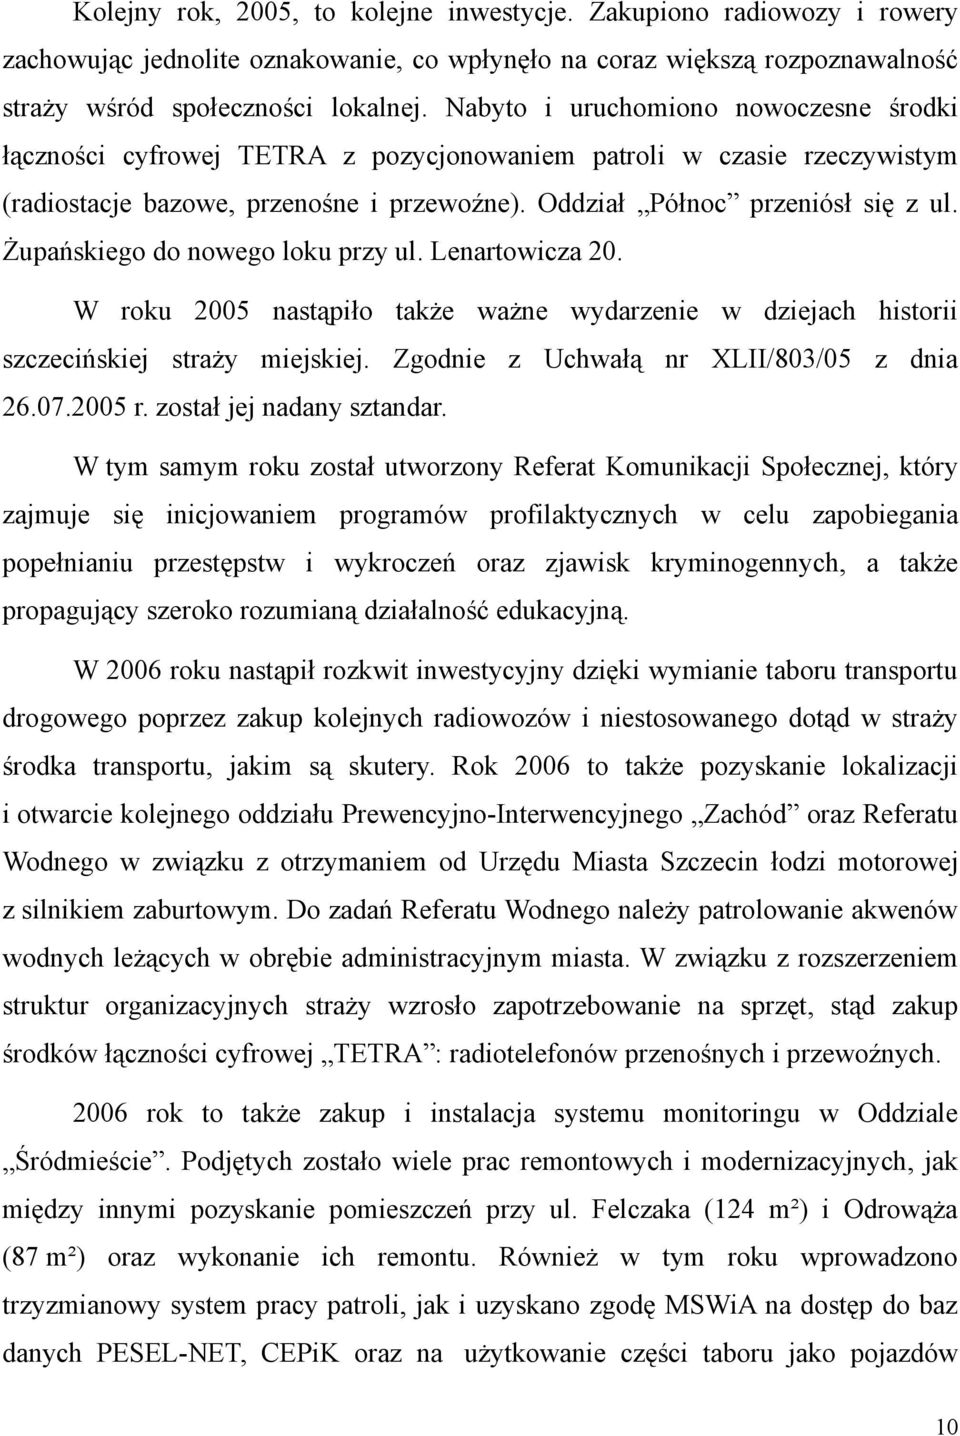 Żupańskiego do nowego loku przy ul. Lenartowicza 20. W roku 2005 nastąpiło także ważne wydarzenie w dziejach historii szczecińskiej straży miejskiej. Zgodnie z Uchwałą nr XLII/803/05 z dnia 26.07.